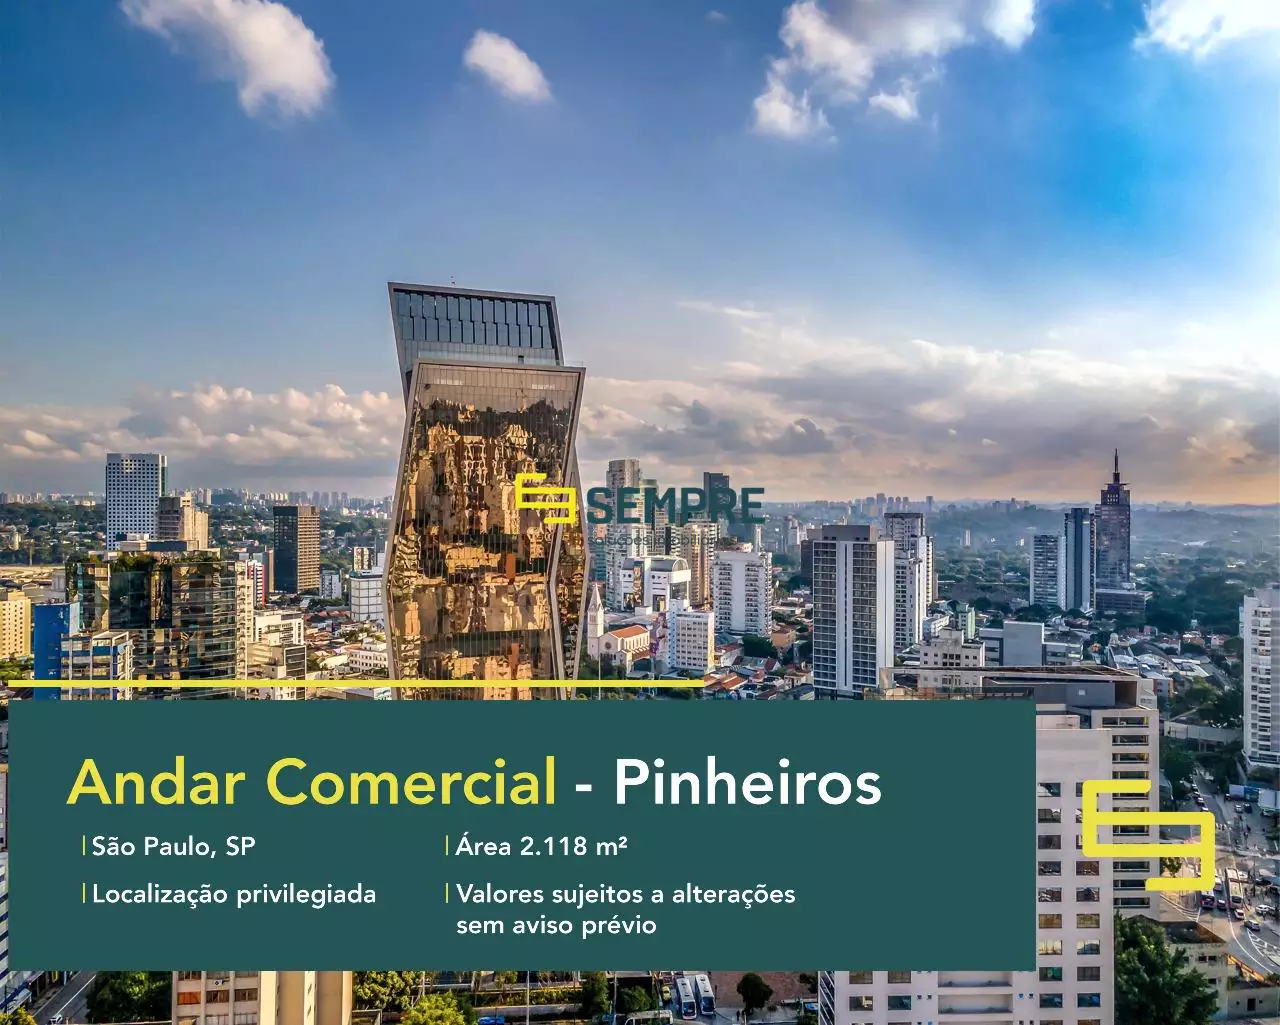 Andar corporativo para alugar no Pinheiros em São Paulo, excelente localização. O estabelecimento comercial conta com área de 2.118 m².